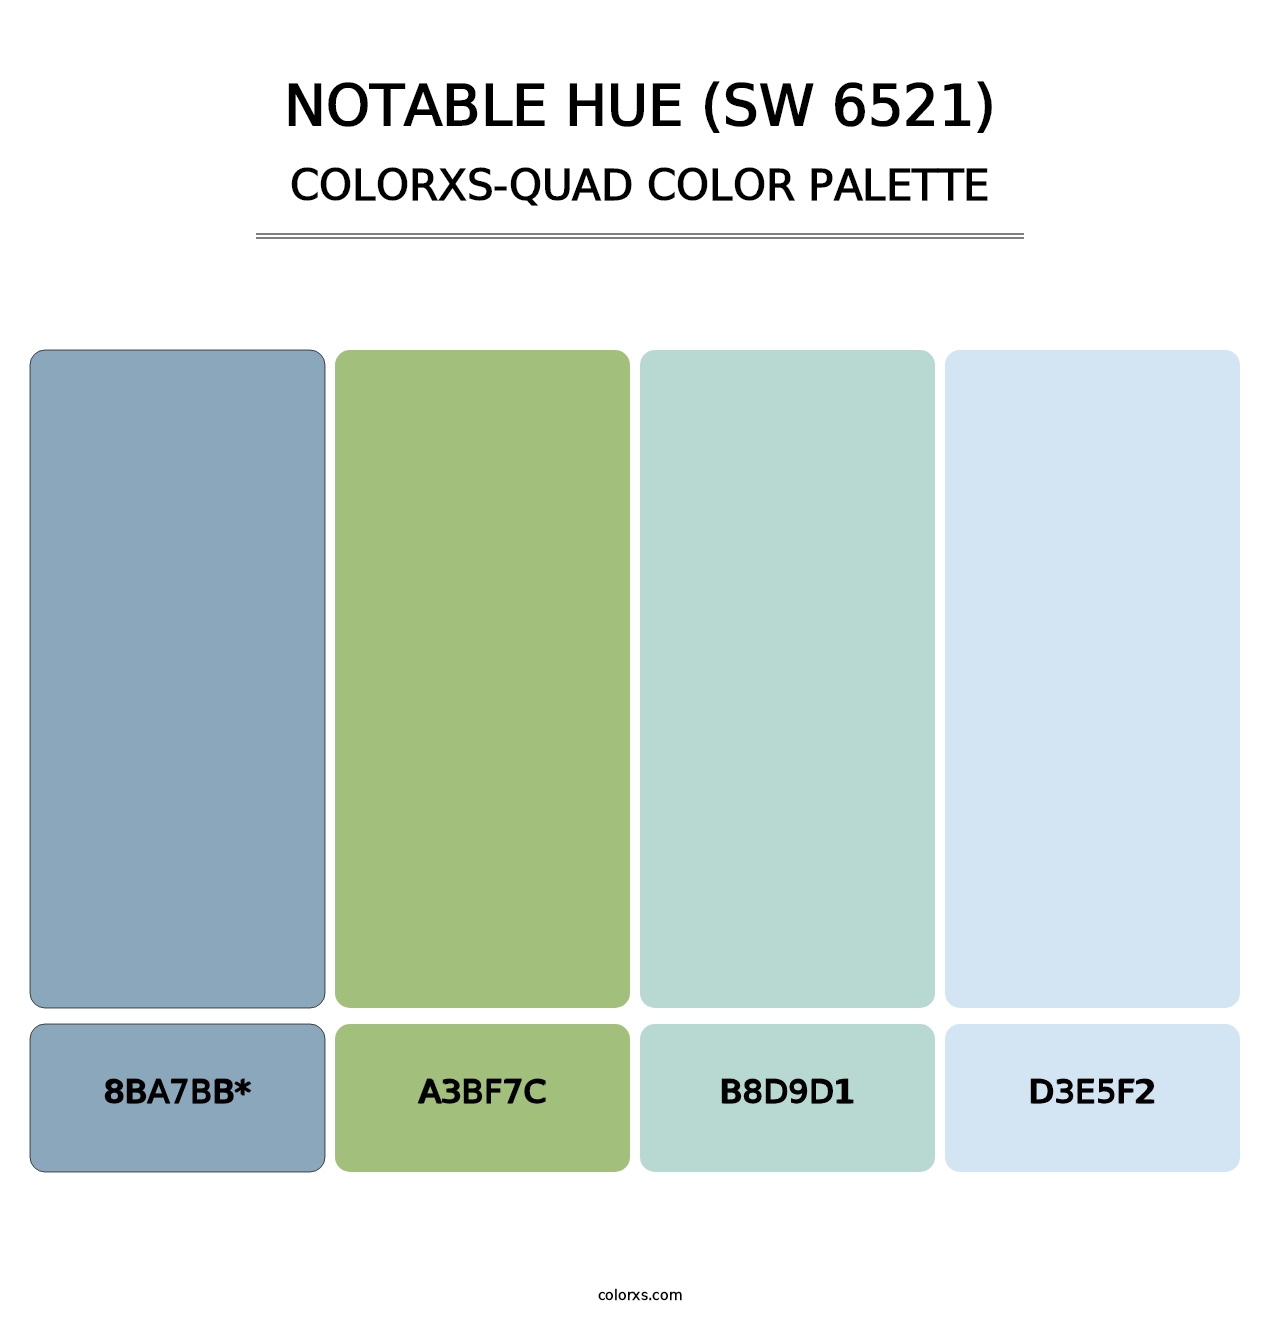 Notable Hue (SW 6521) - Colorxs Quad Palette